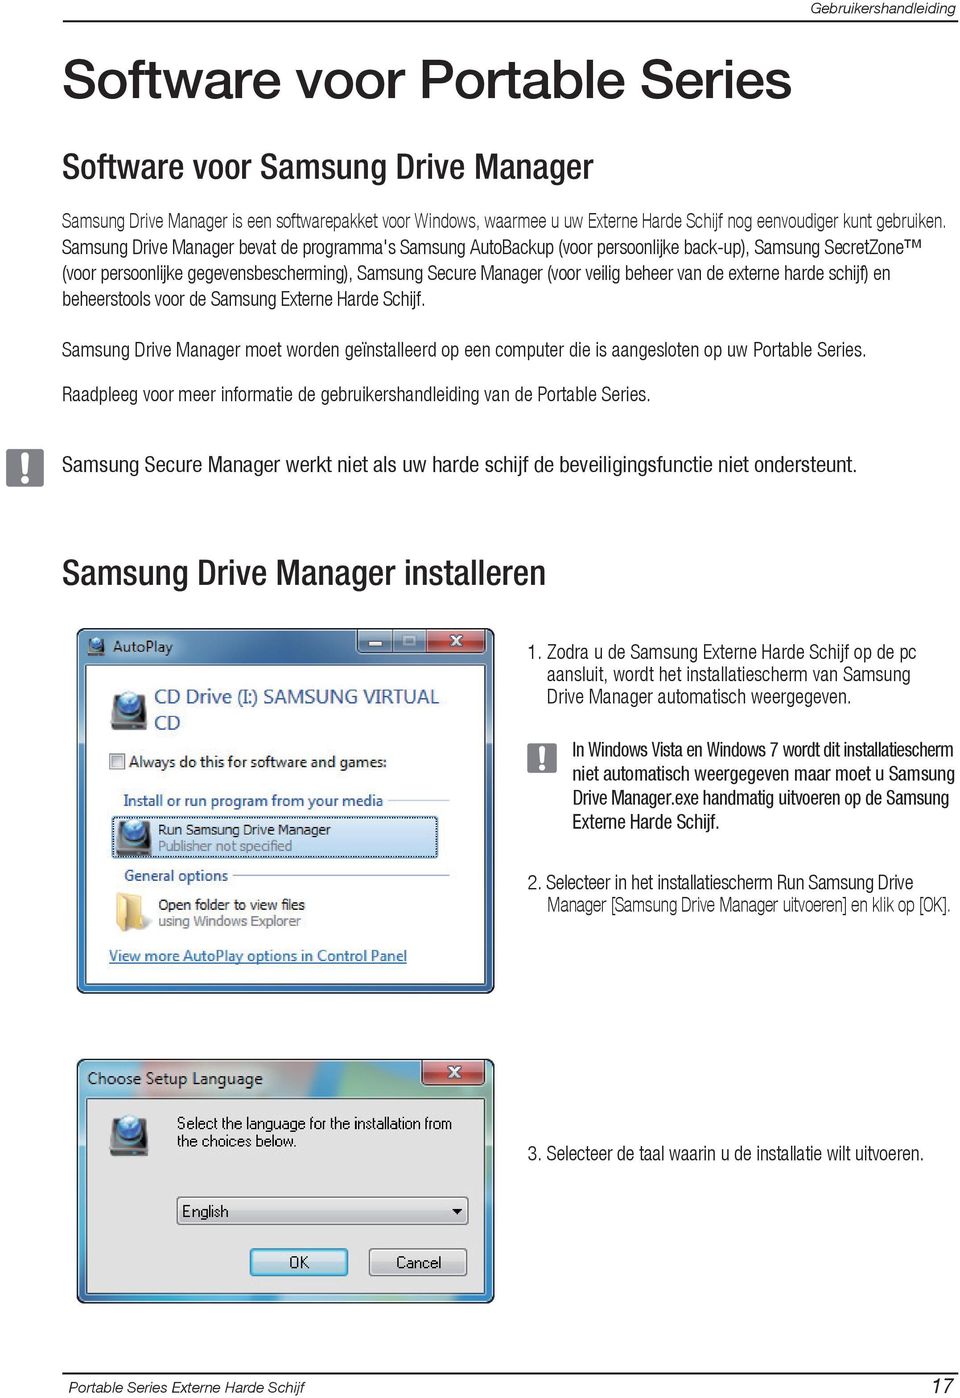 de externe harde schijf) en beheerstools voor de Samsung Externe Harde Schijf. Samsung Drive Manager moet worden geïnstalleerd op een computer die is aangesloten op uw Portable Series.